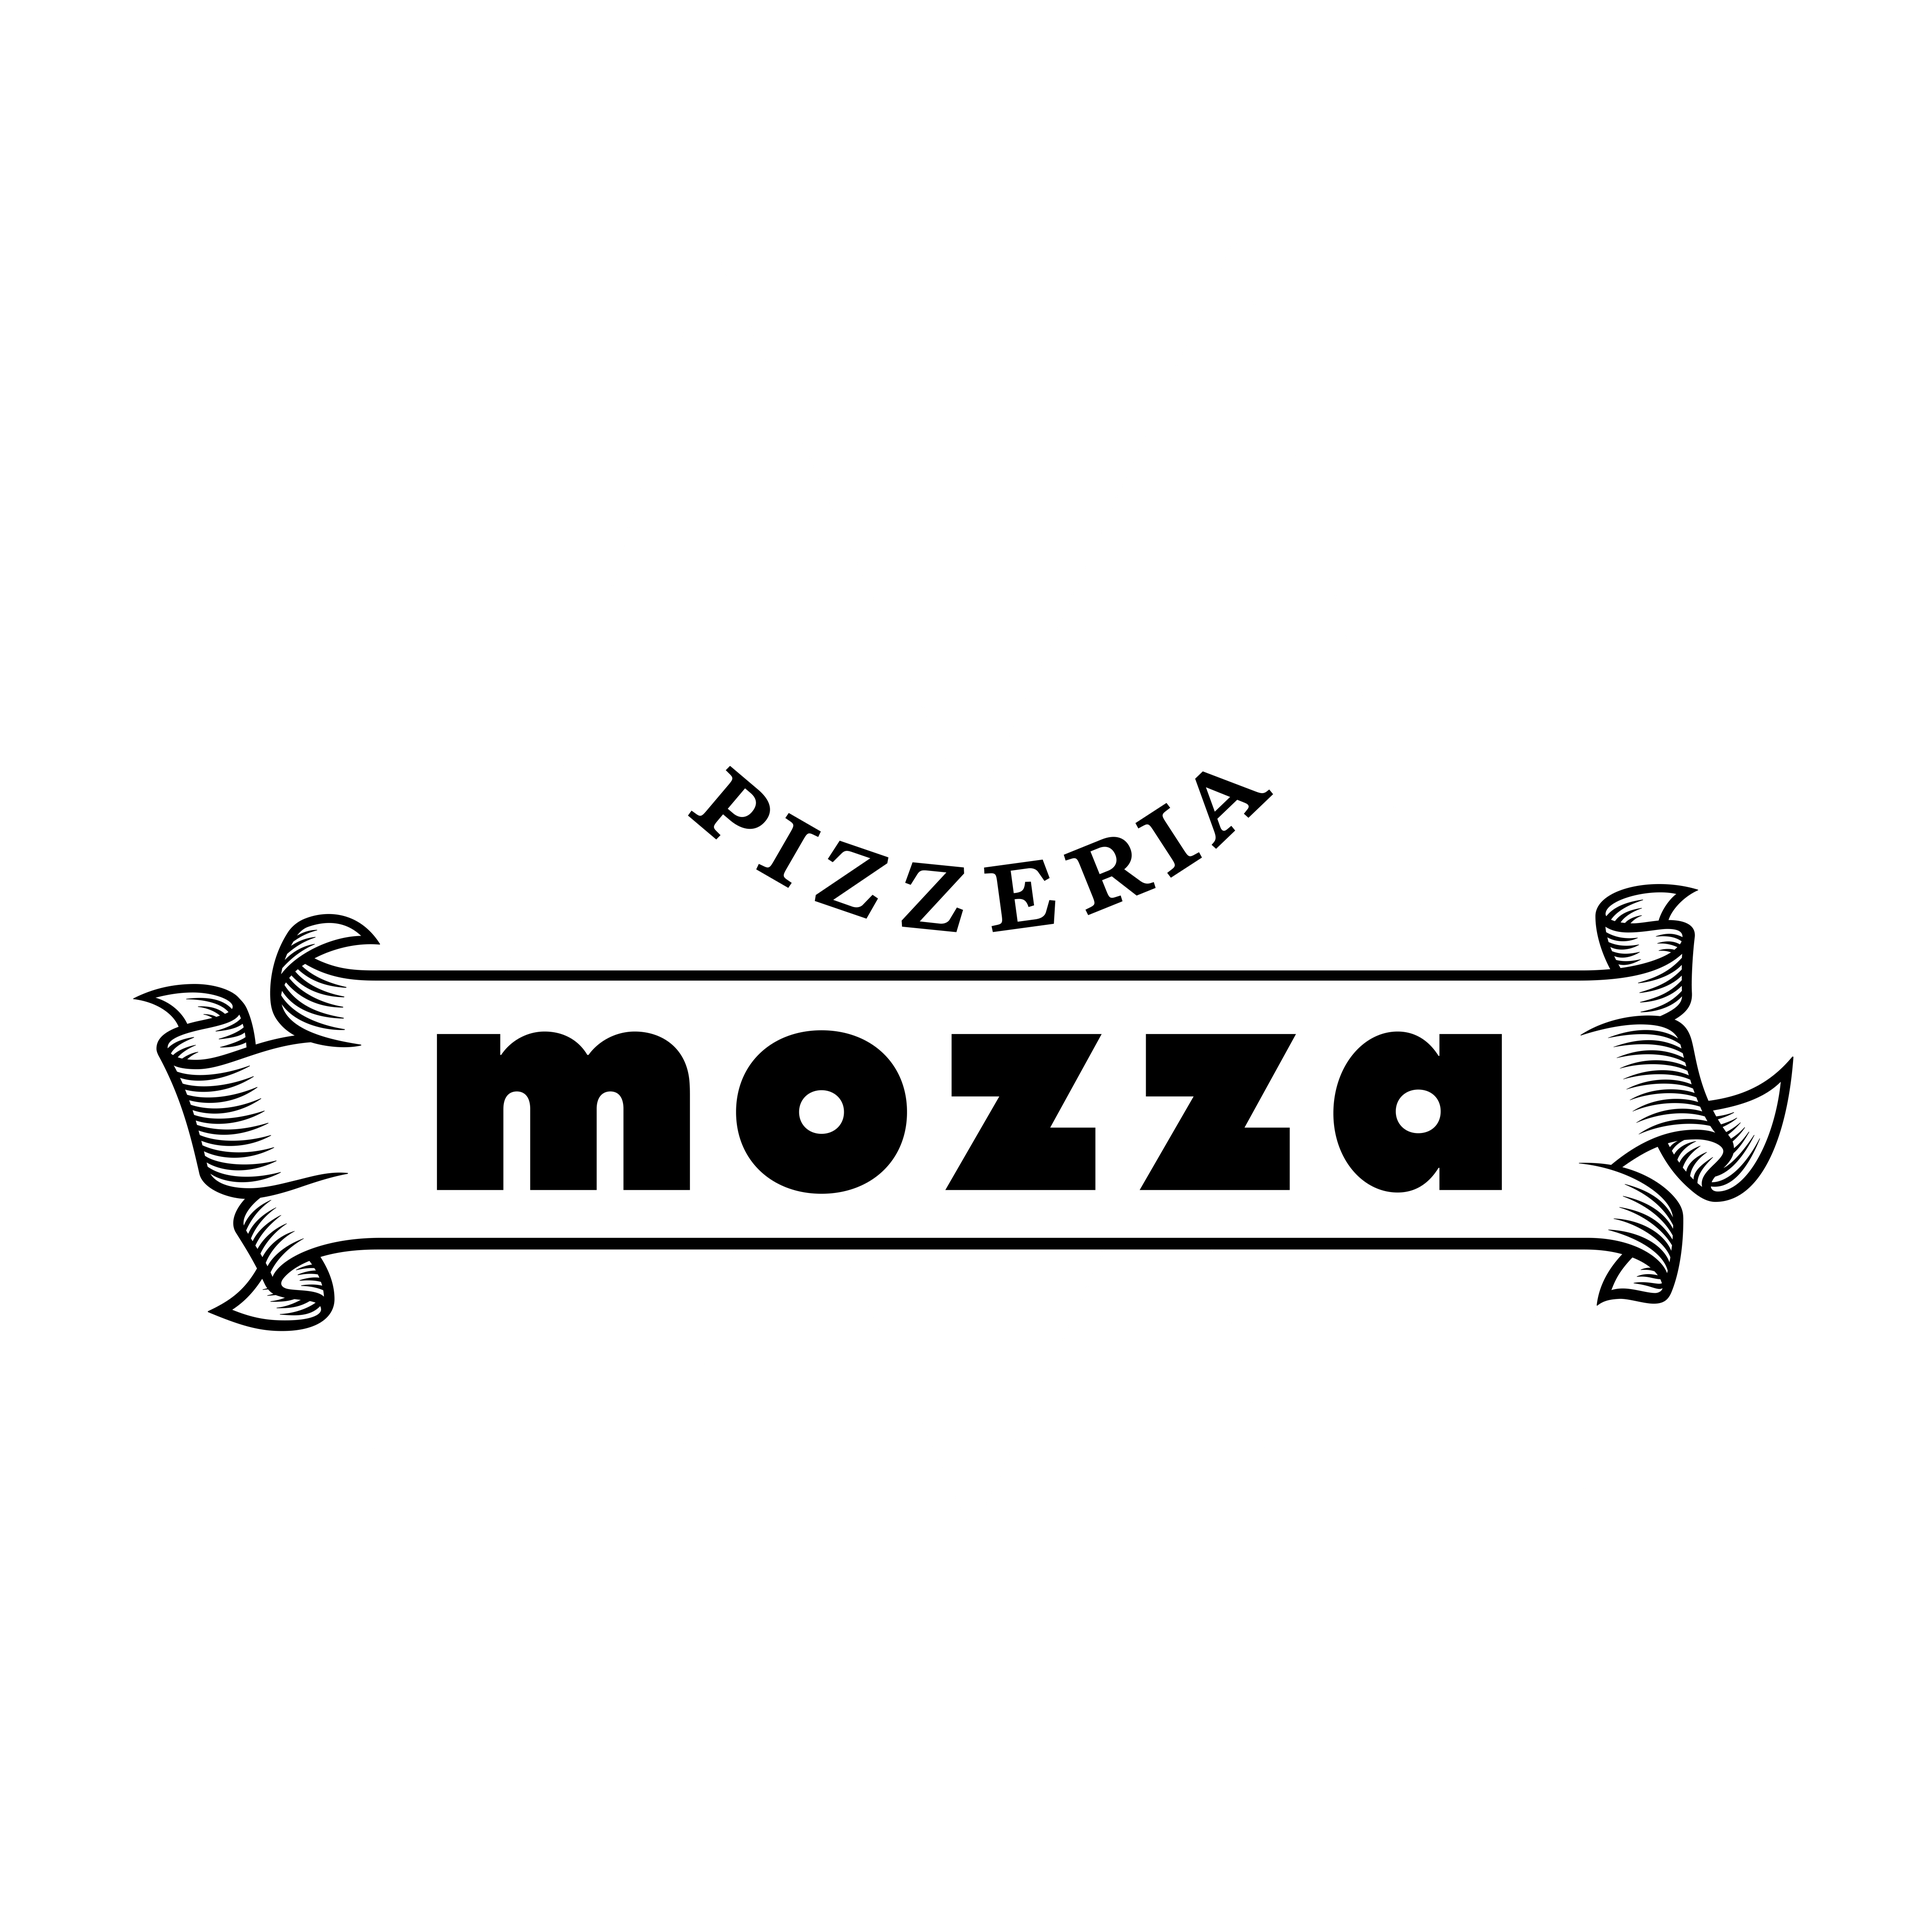 Pizzeria Mozza logo white